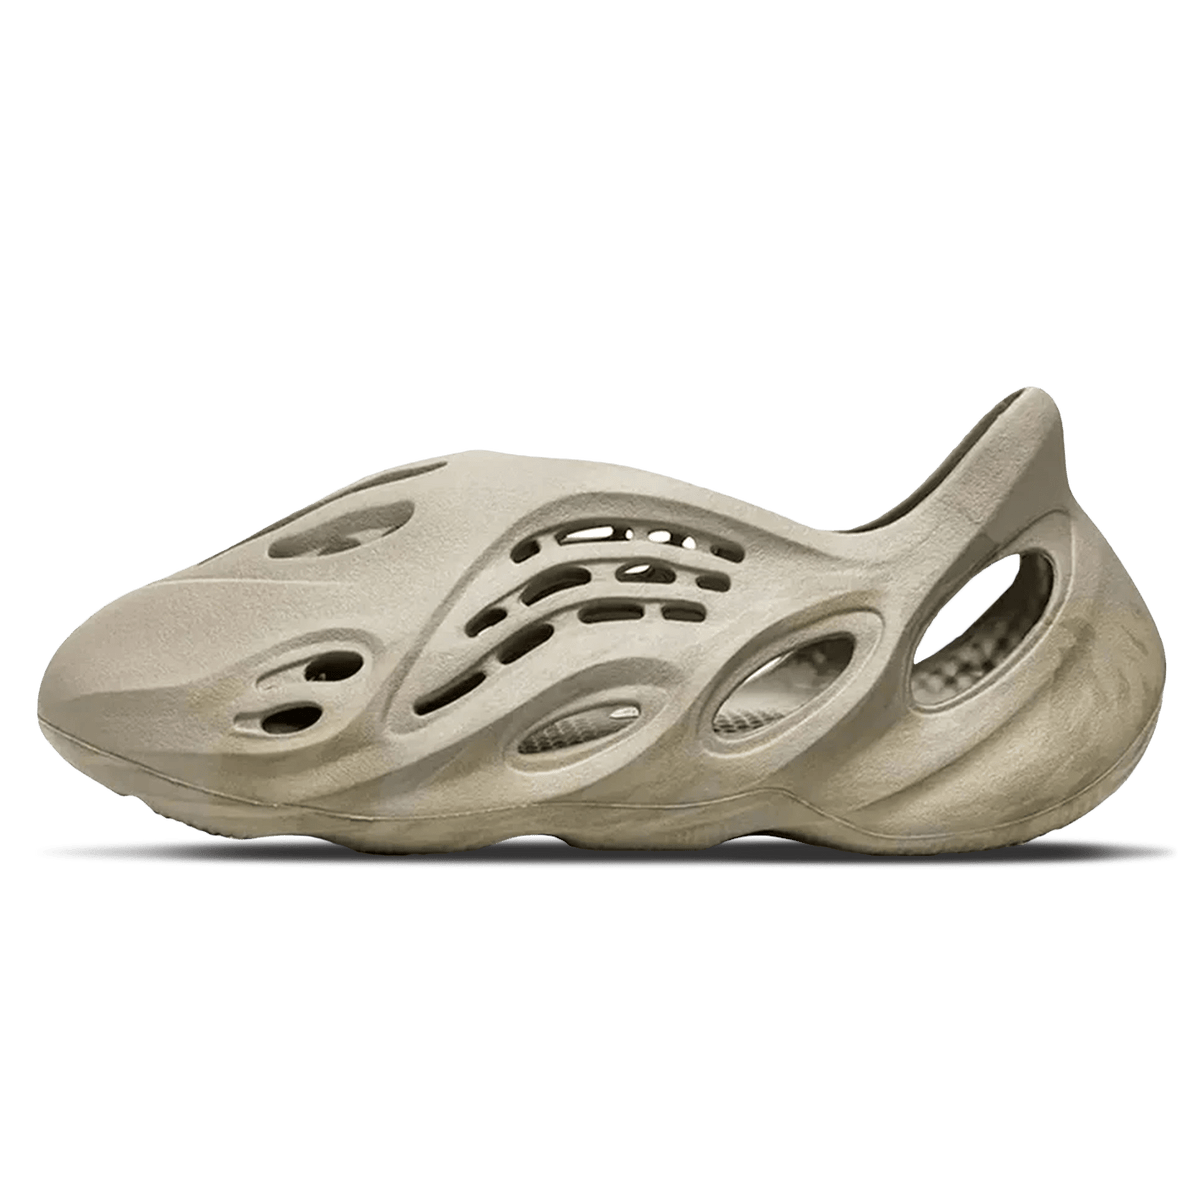 adidas yeezy foam rnr stone salt GV6840 1